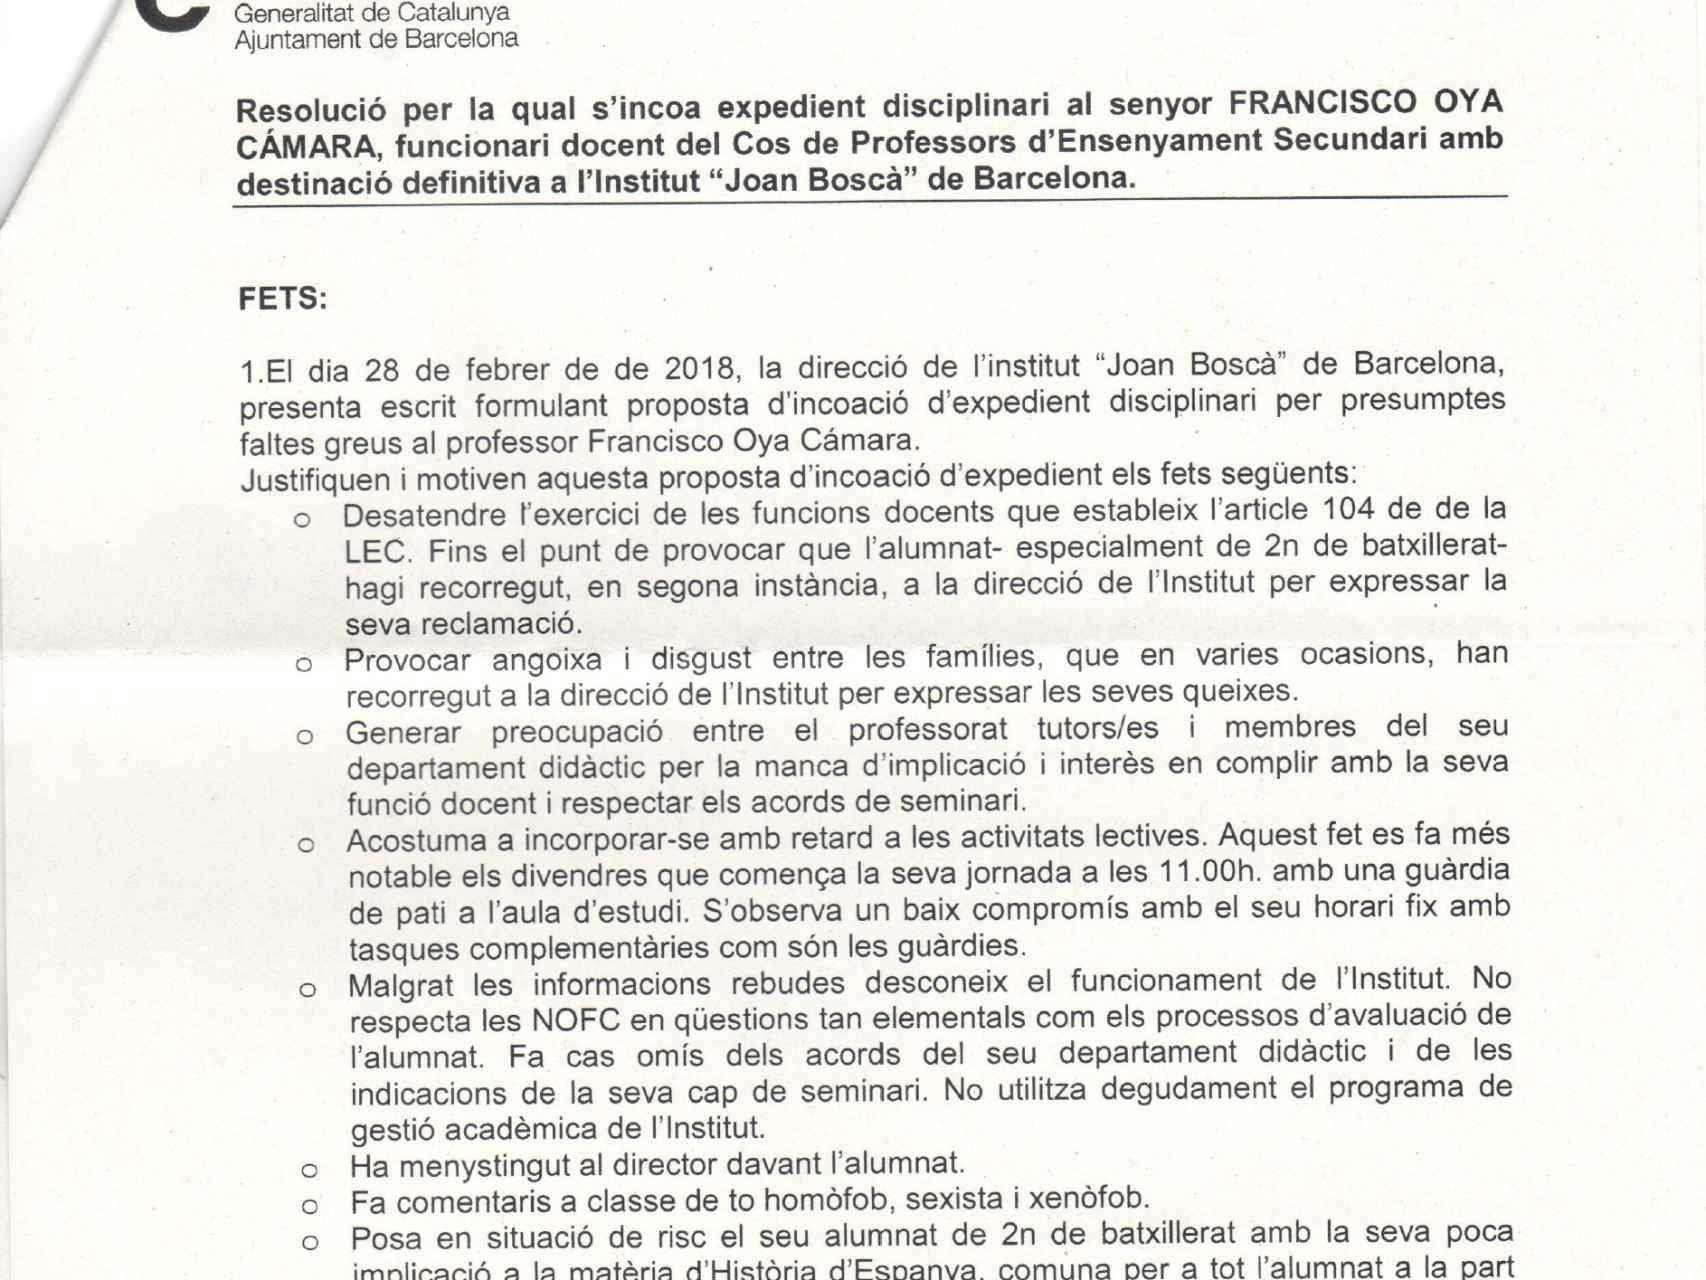 Un fragmento de la resolución por la que se le abre expediente disciplinario a Francisco Oya.